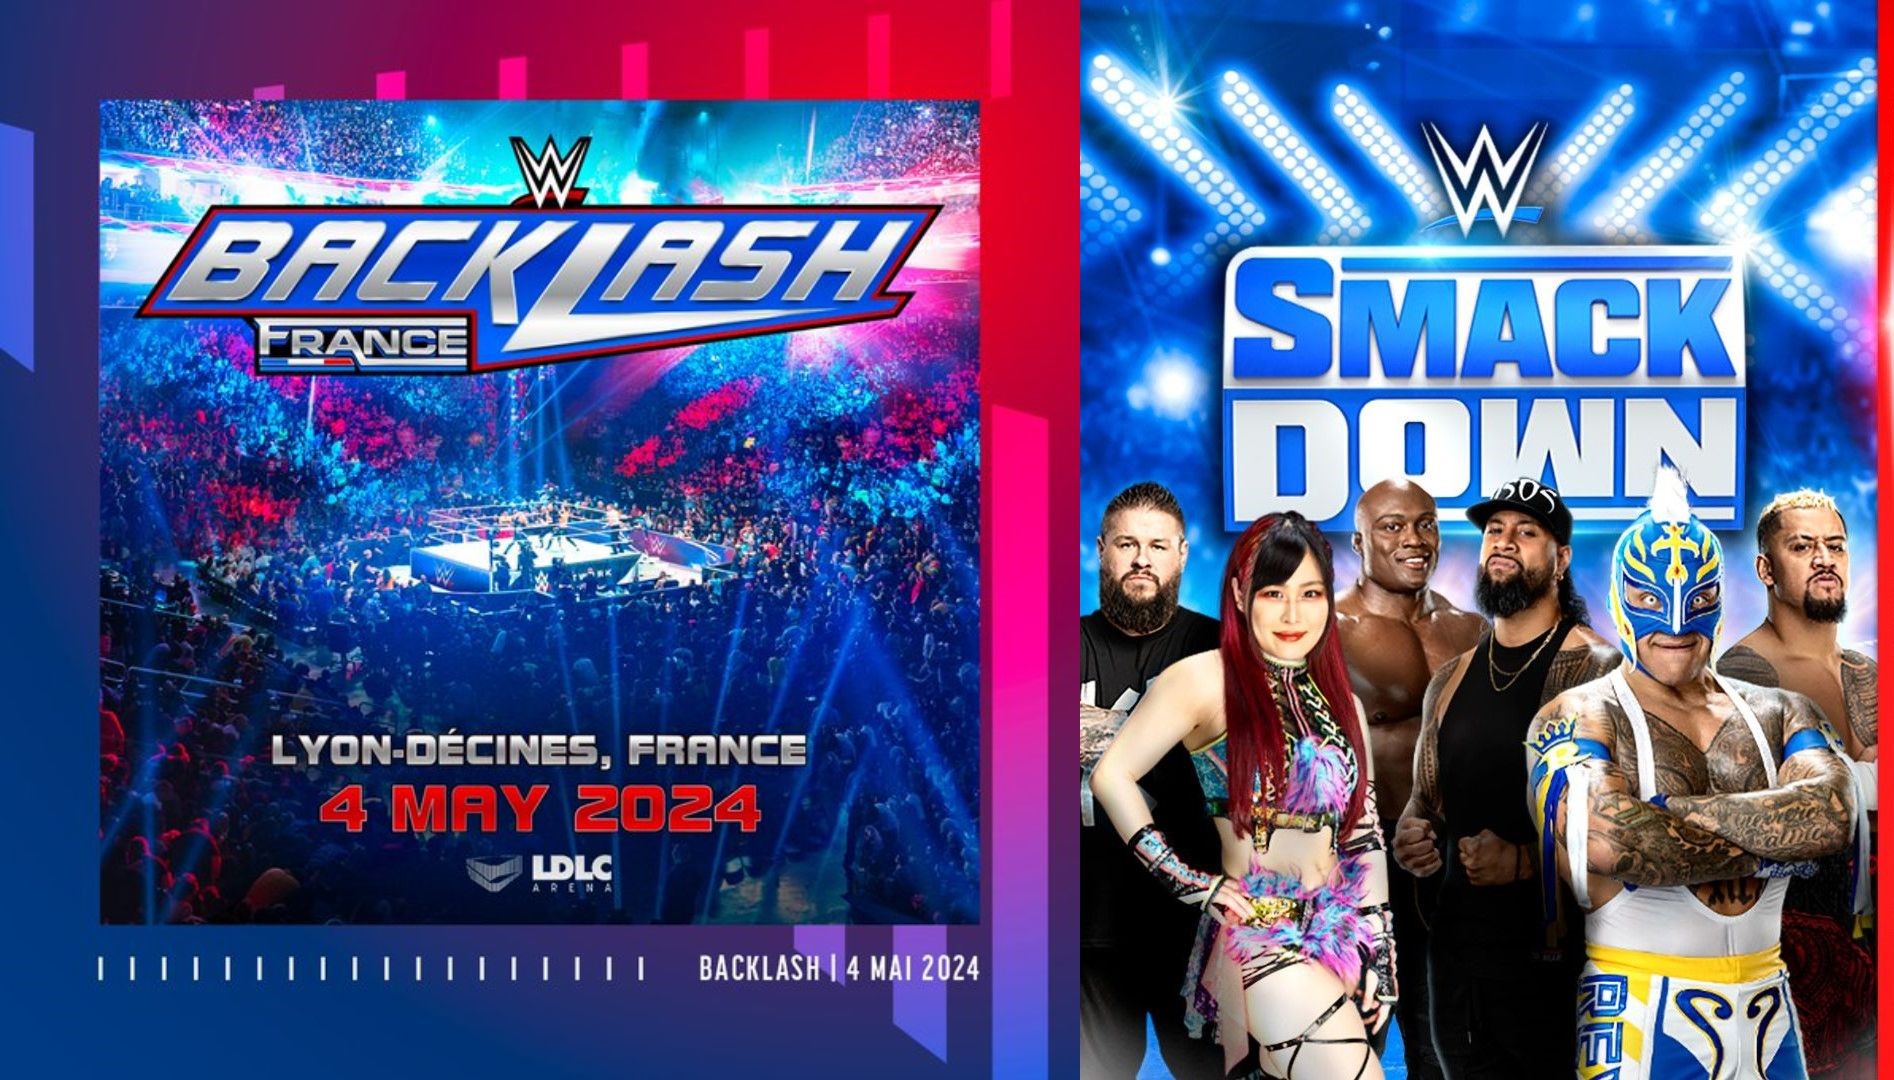 Voici les prix des billets pour WWE Backlash France